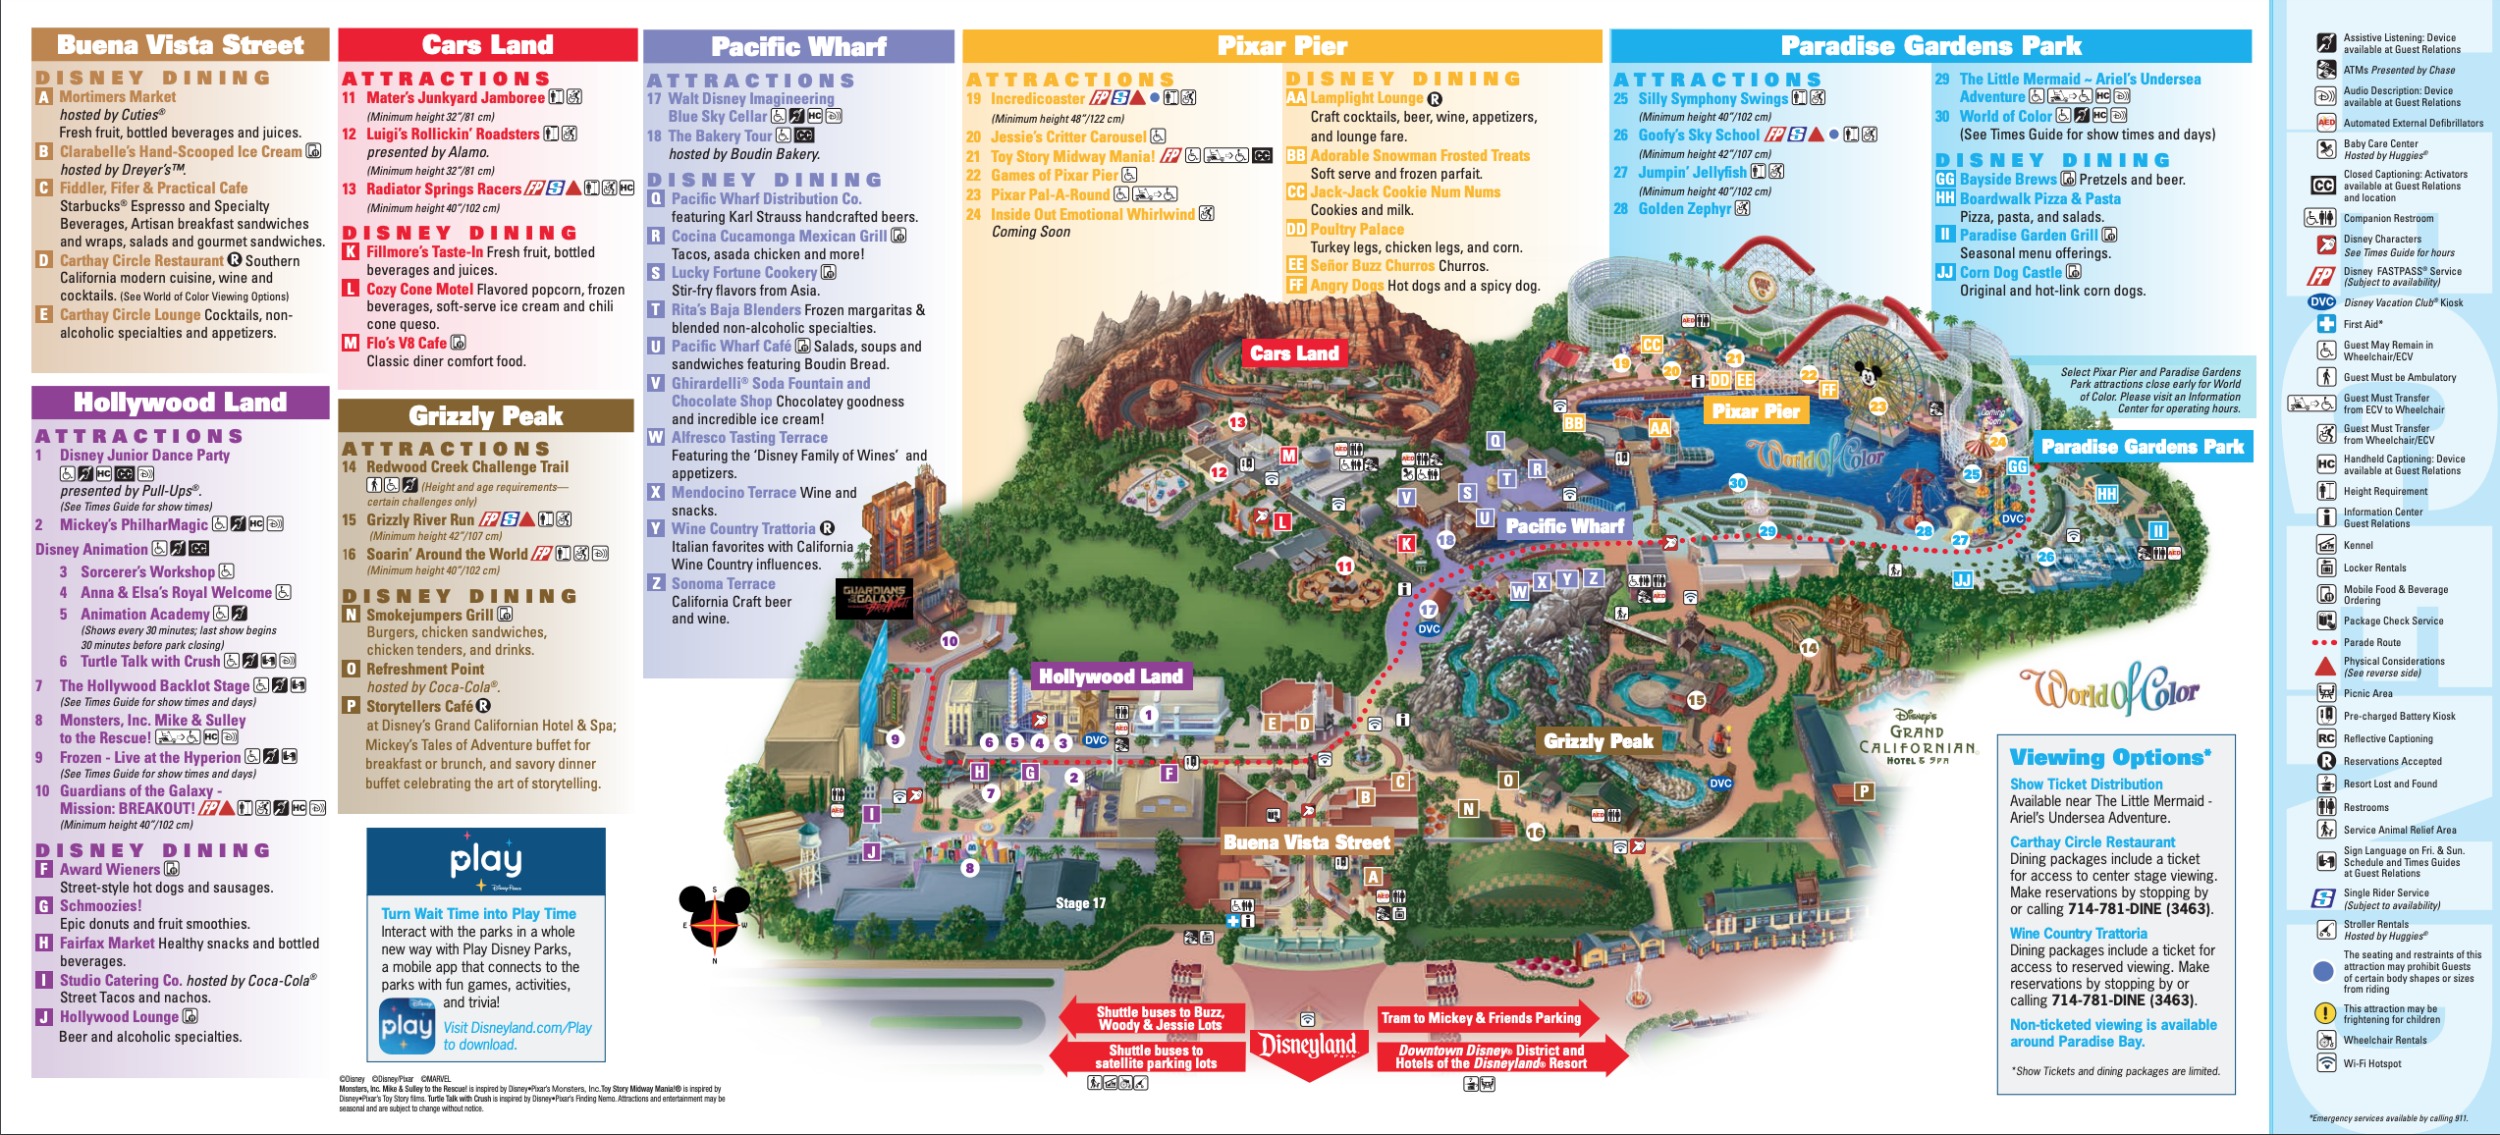 Disneyland Map In California Disneyland Park Map in California, Map of Disneyland